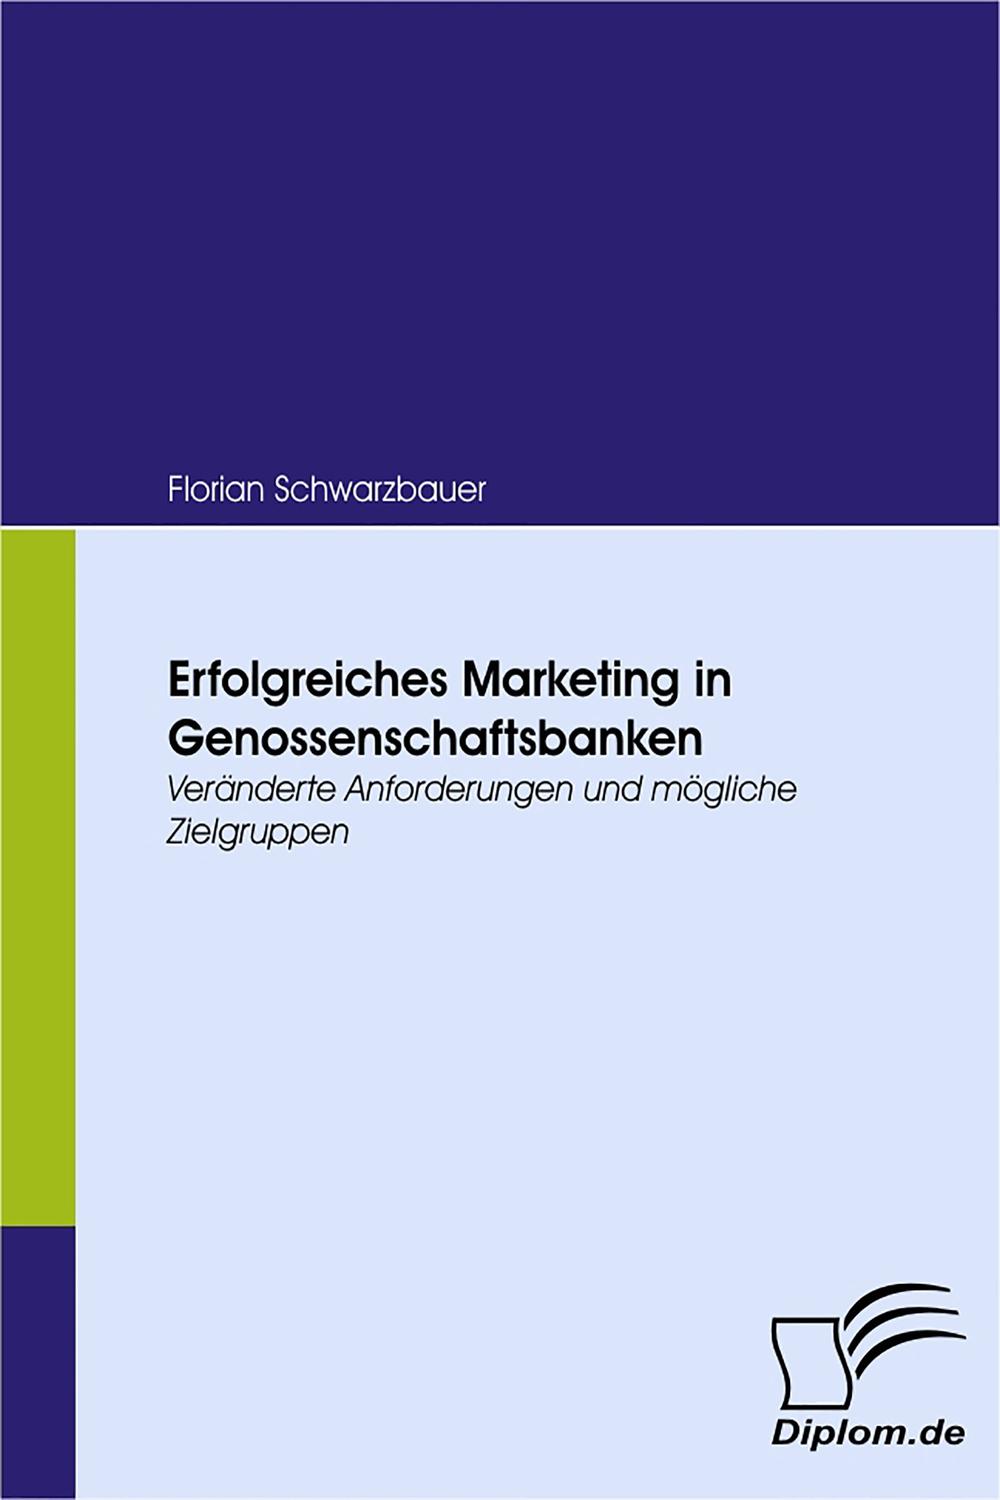 Erfolgreiches Marketing in Genossenschaftsbanken - Florian Schwarzbauer